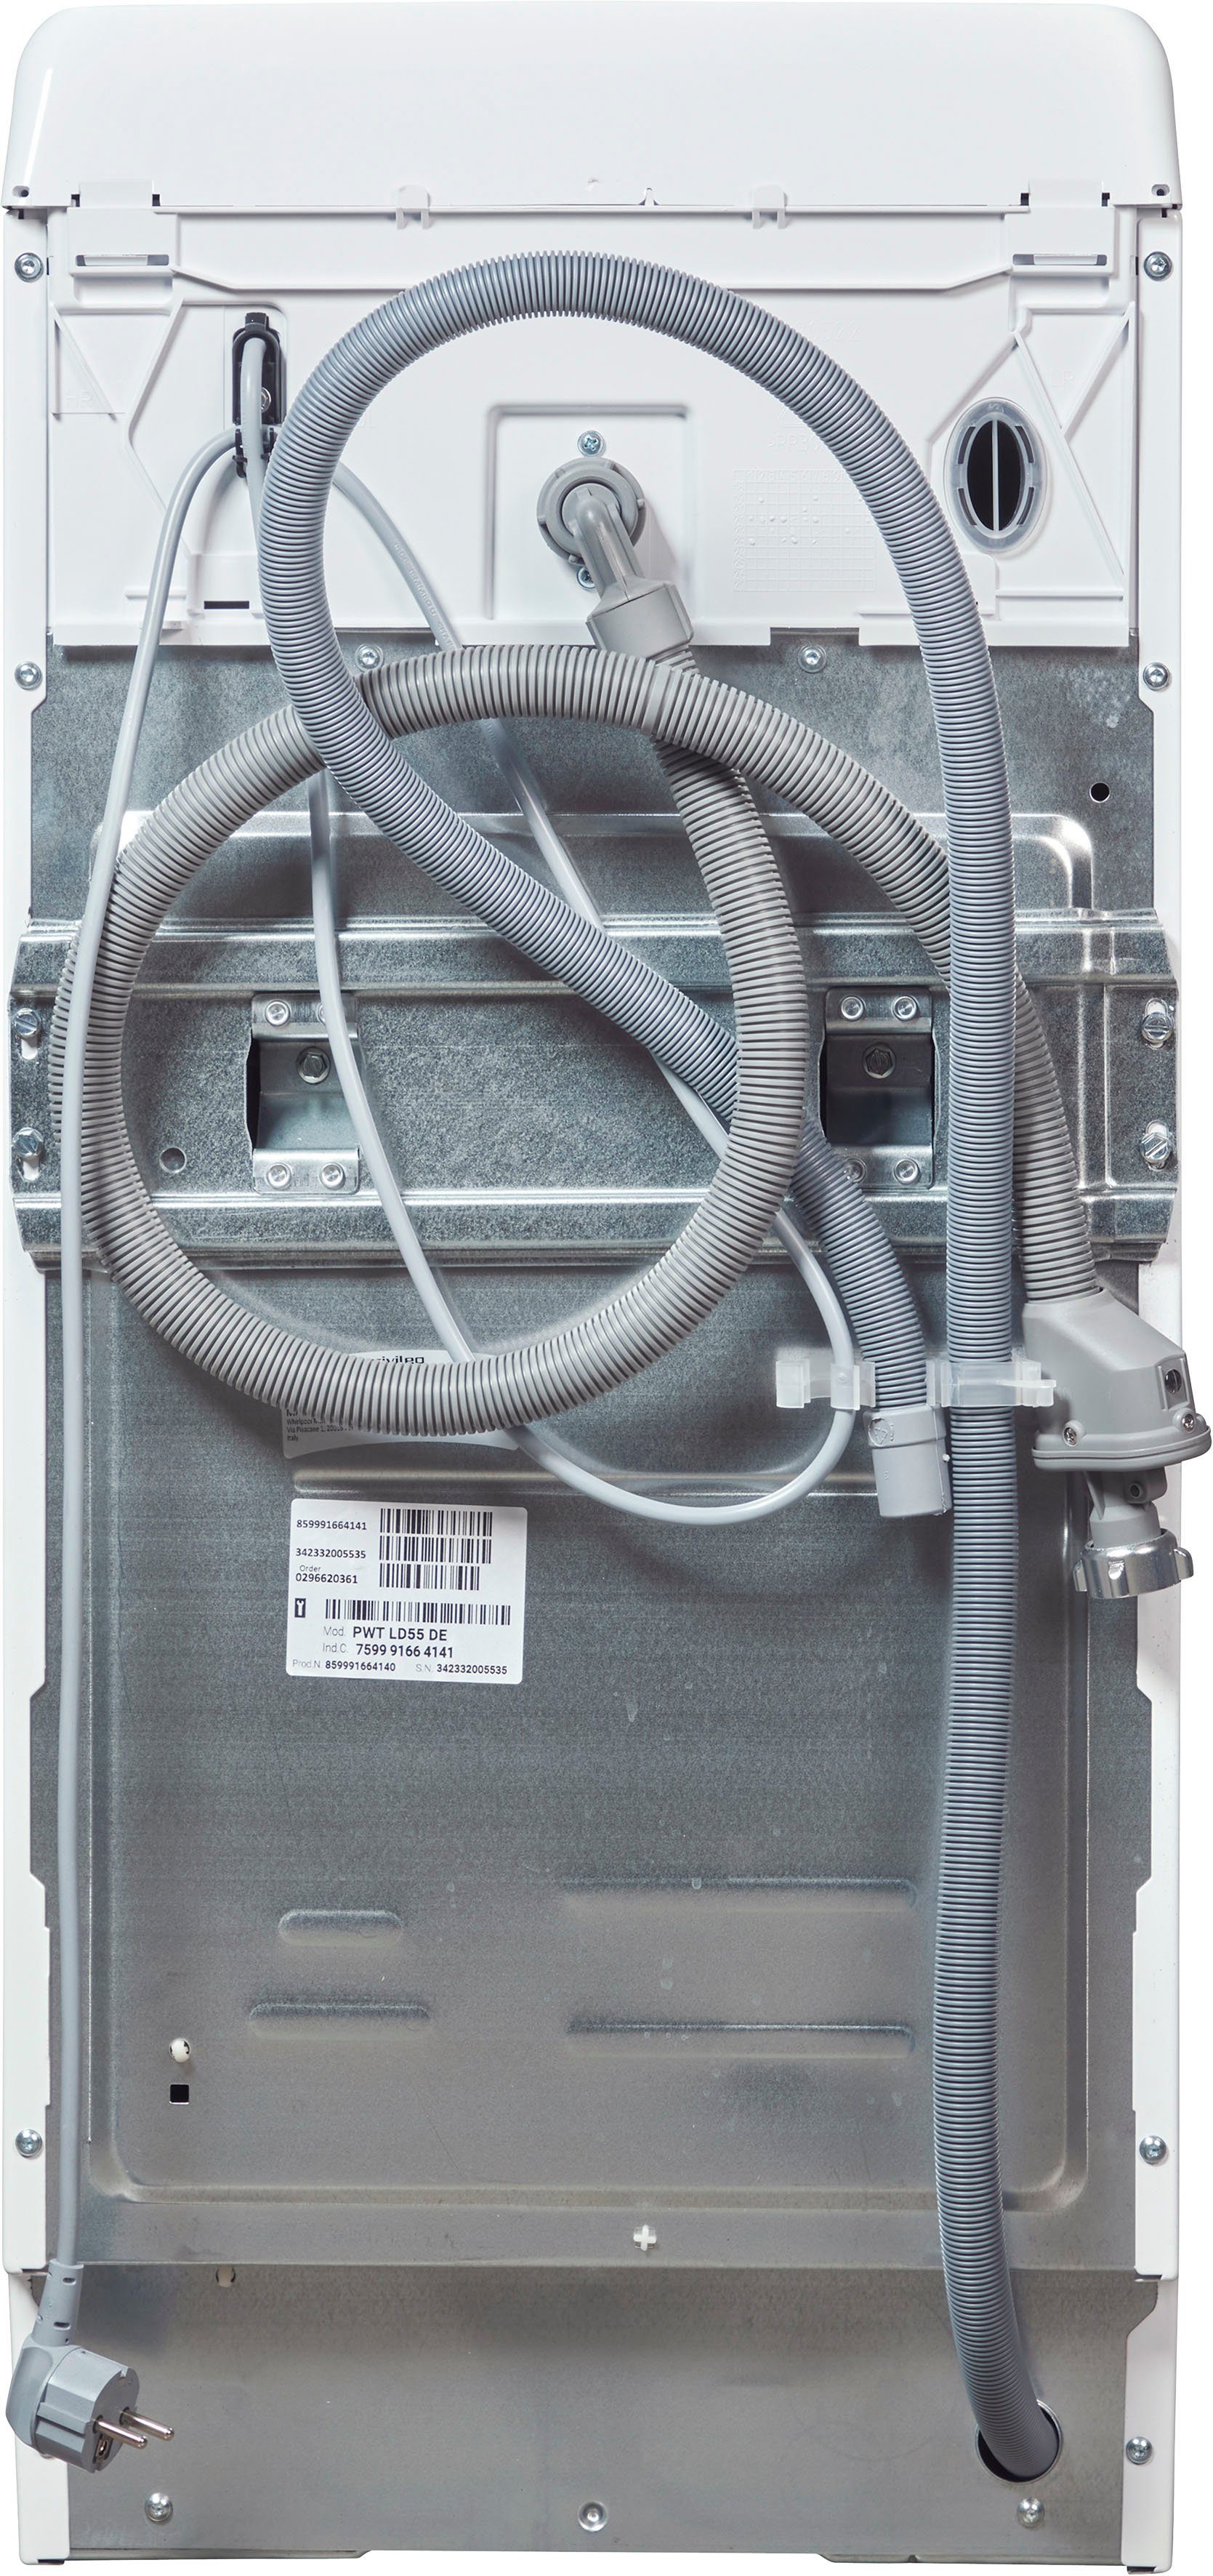 Privileg Waschmaschine Toplader PWT LD55 DE, kg, U/min 1100 5,5